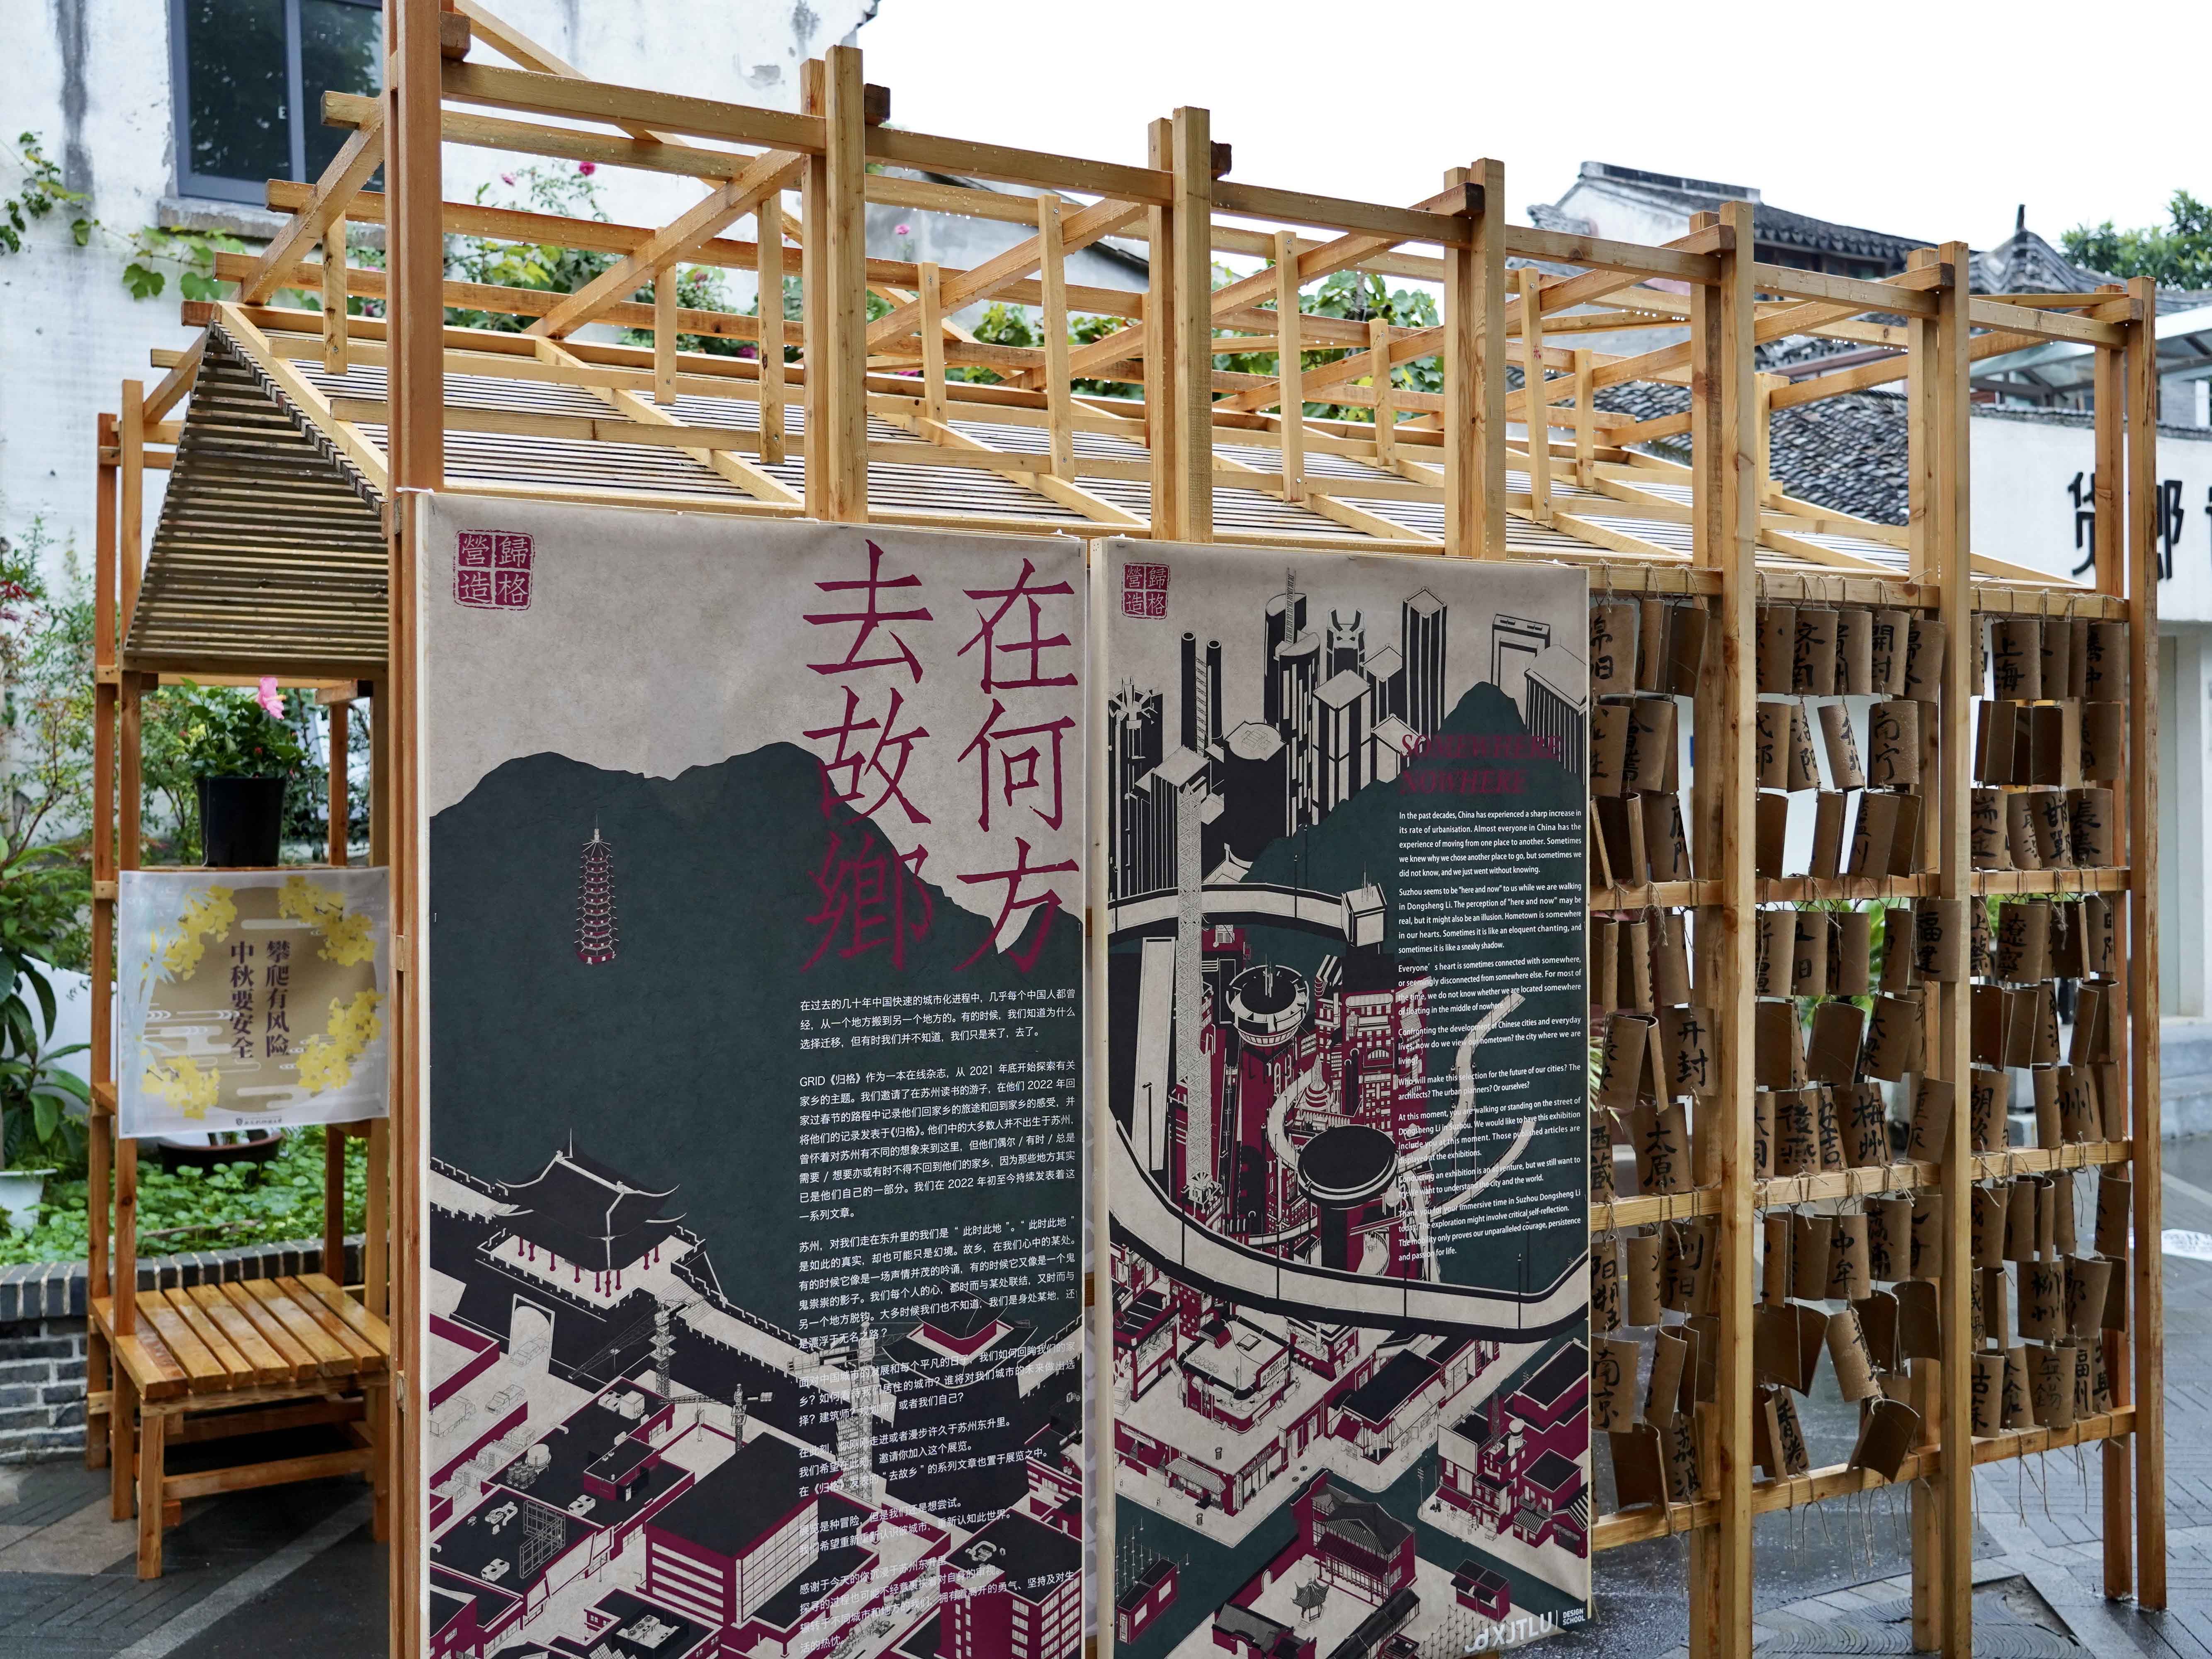 与古城对话 西浦建筑系街道展览在苏州东升里开幕